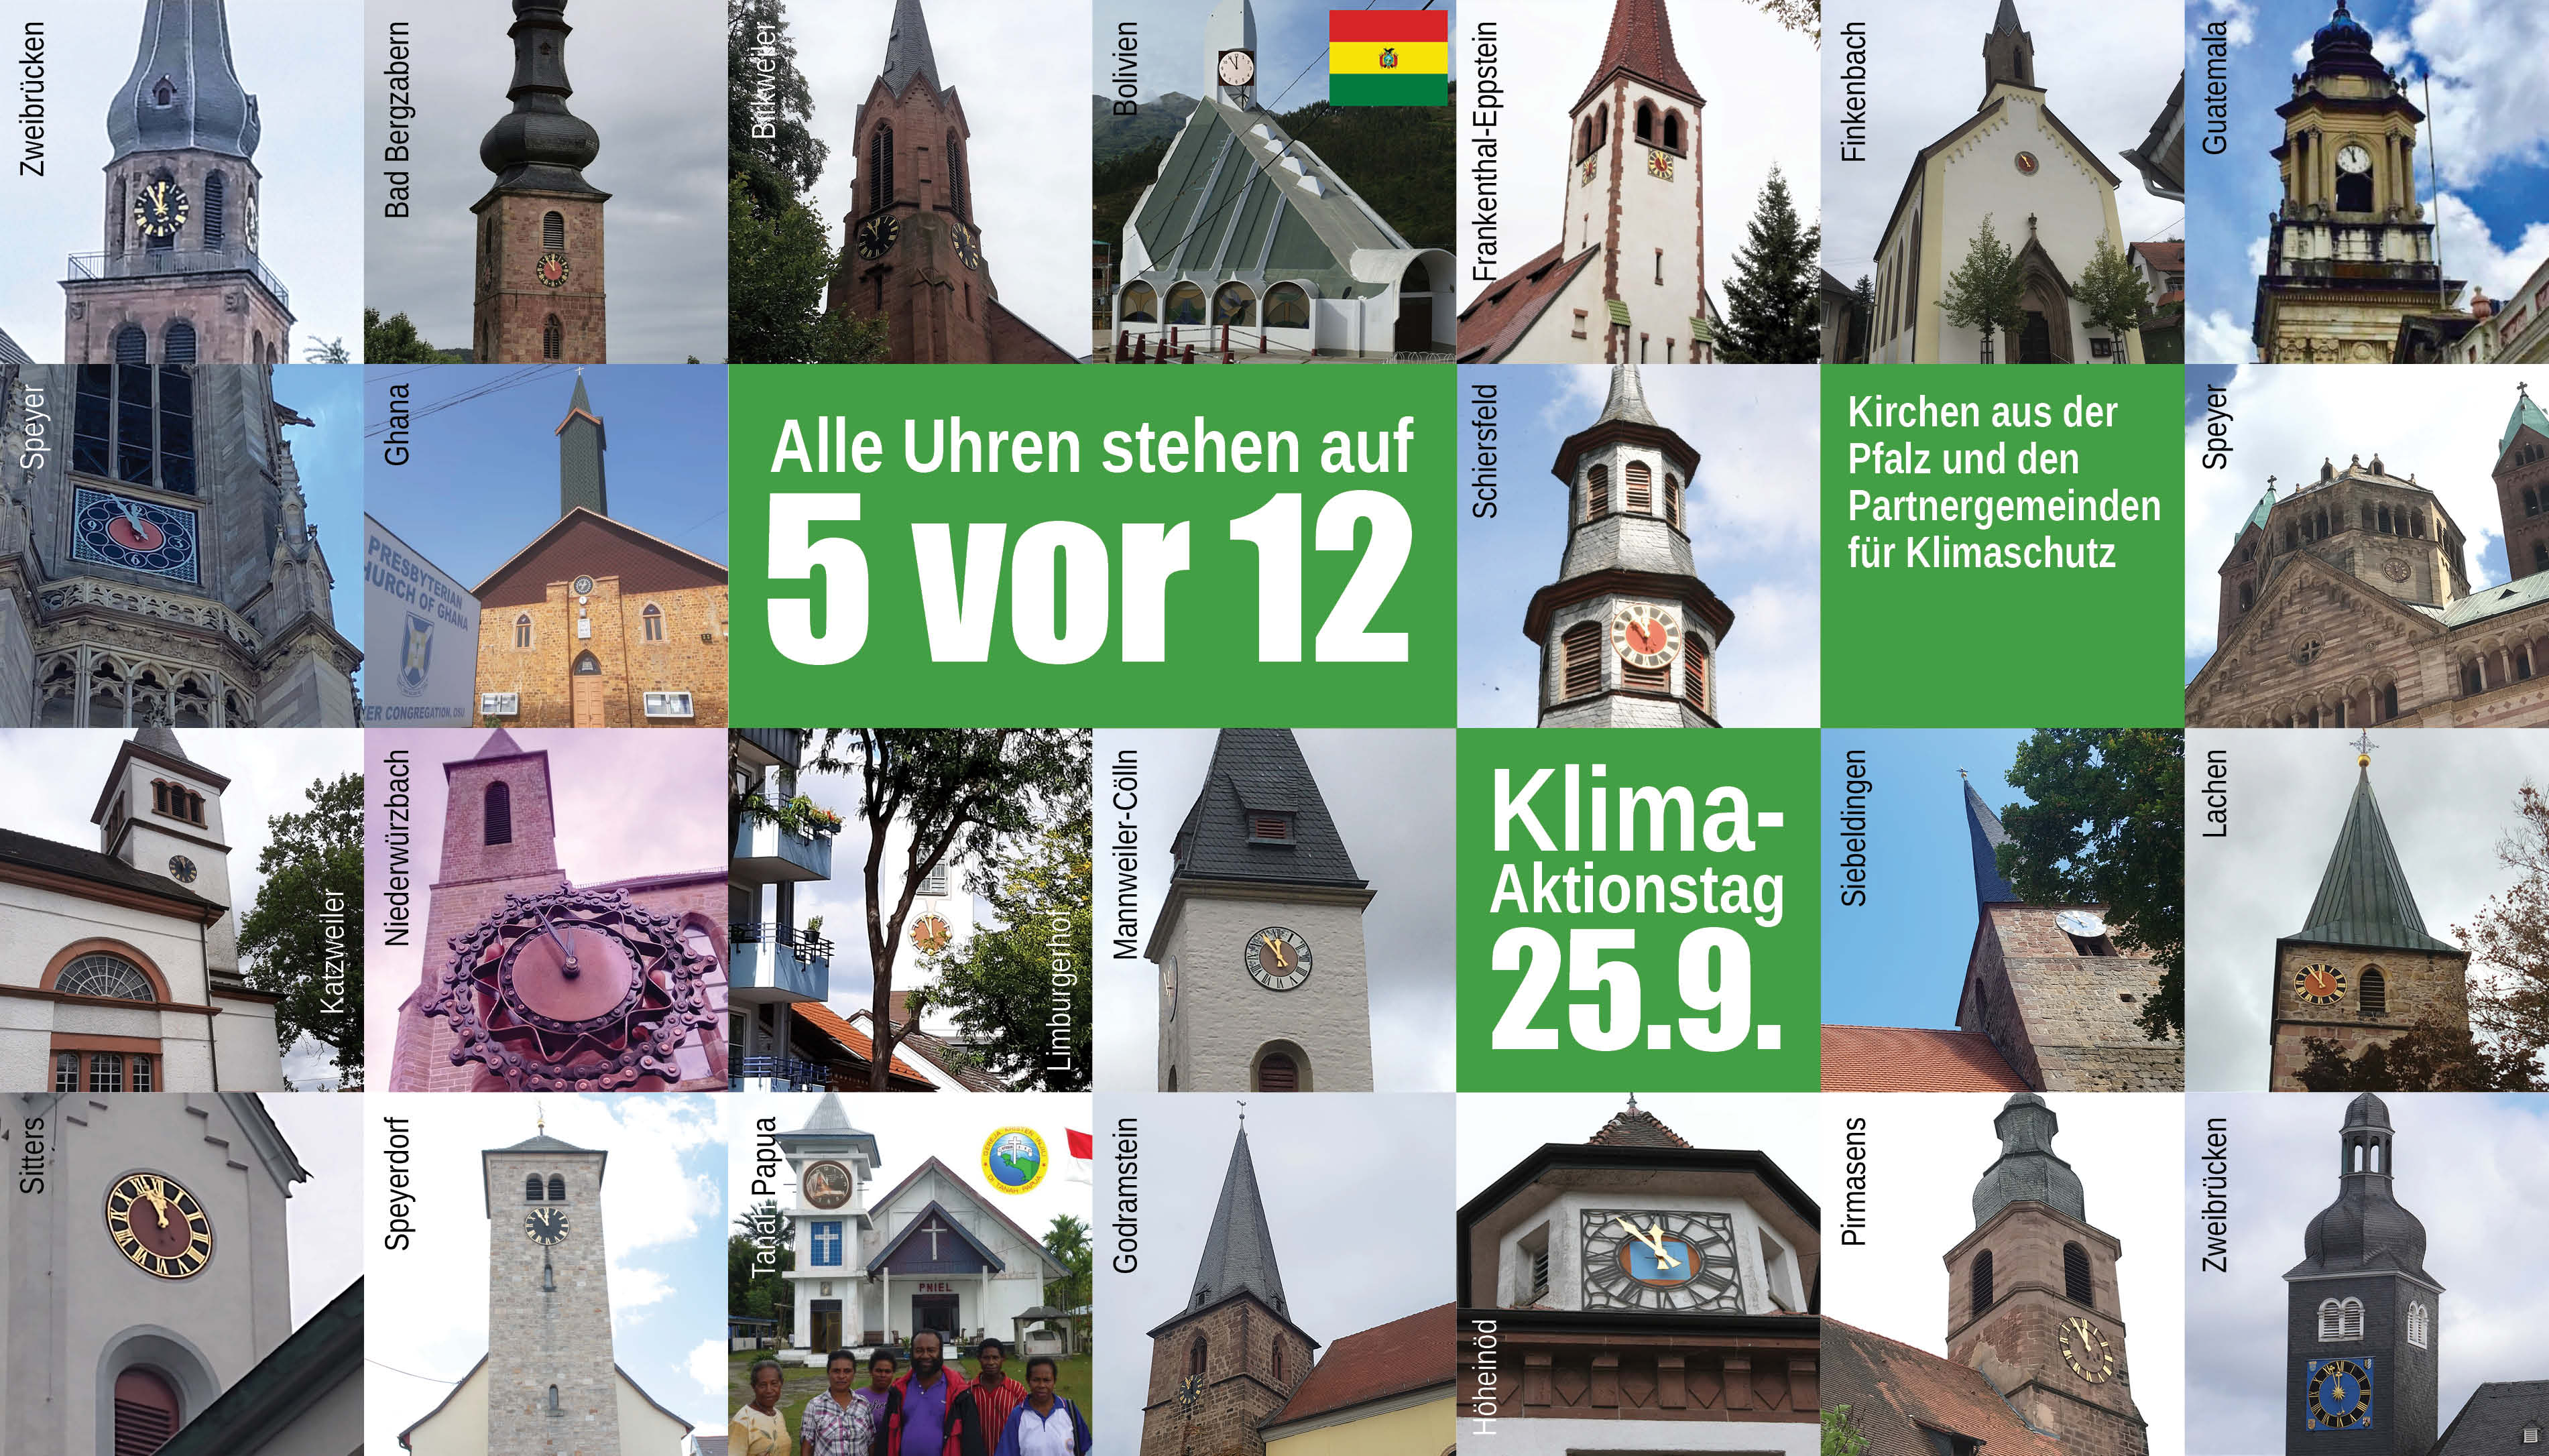 csm 0923 Kirchturmuhren 5 vor 12 oekumenisch Evangelische Kirche der Pfalz Florian Grieb 63aa4aef85